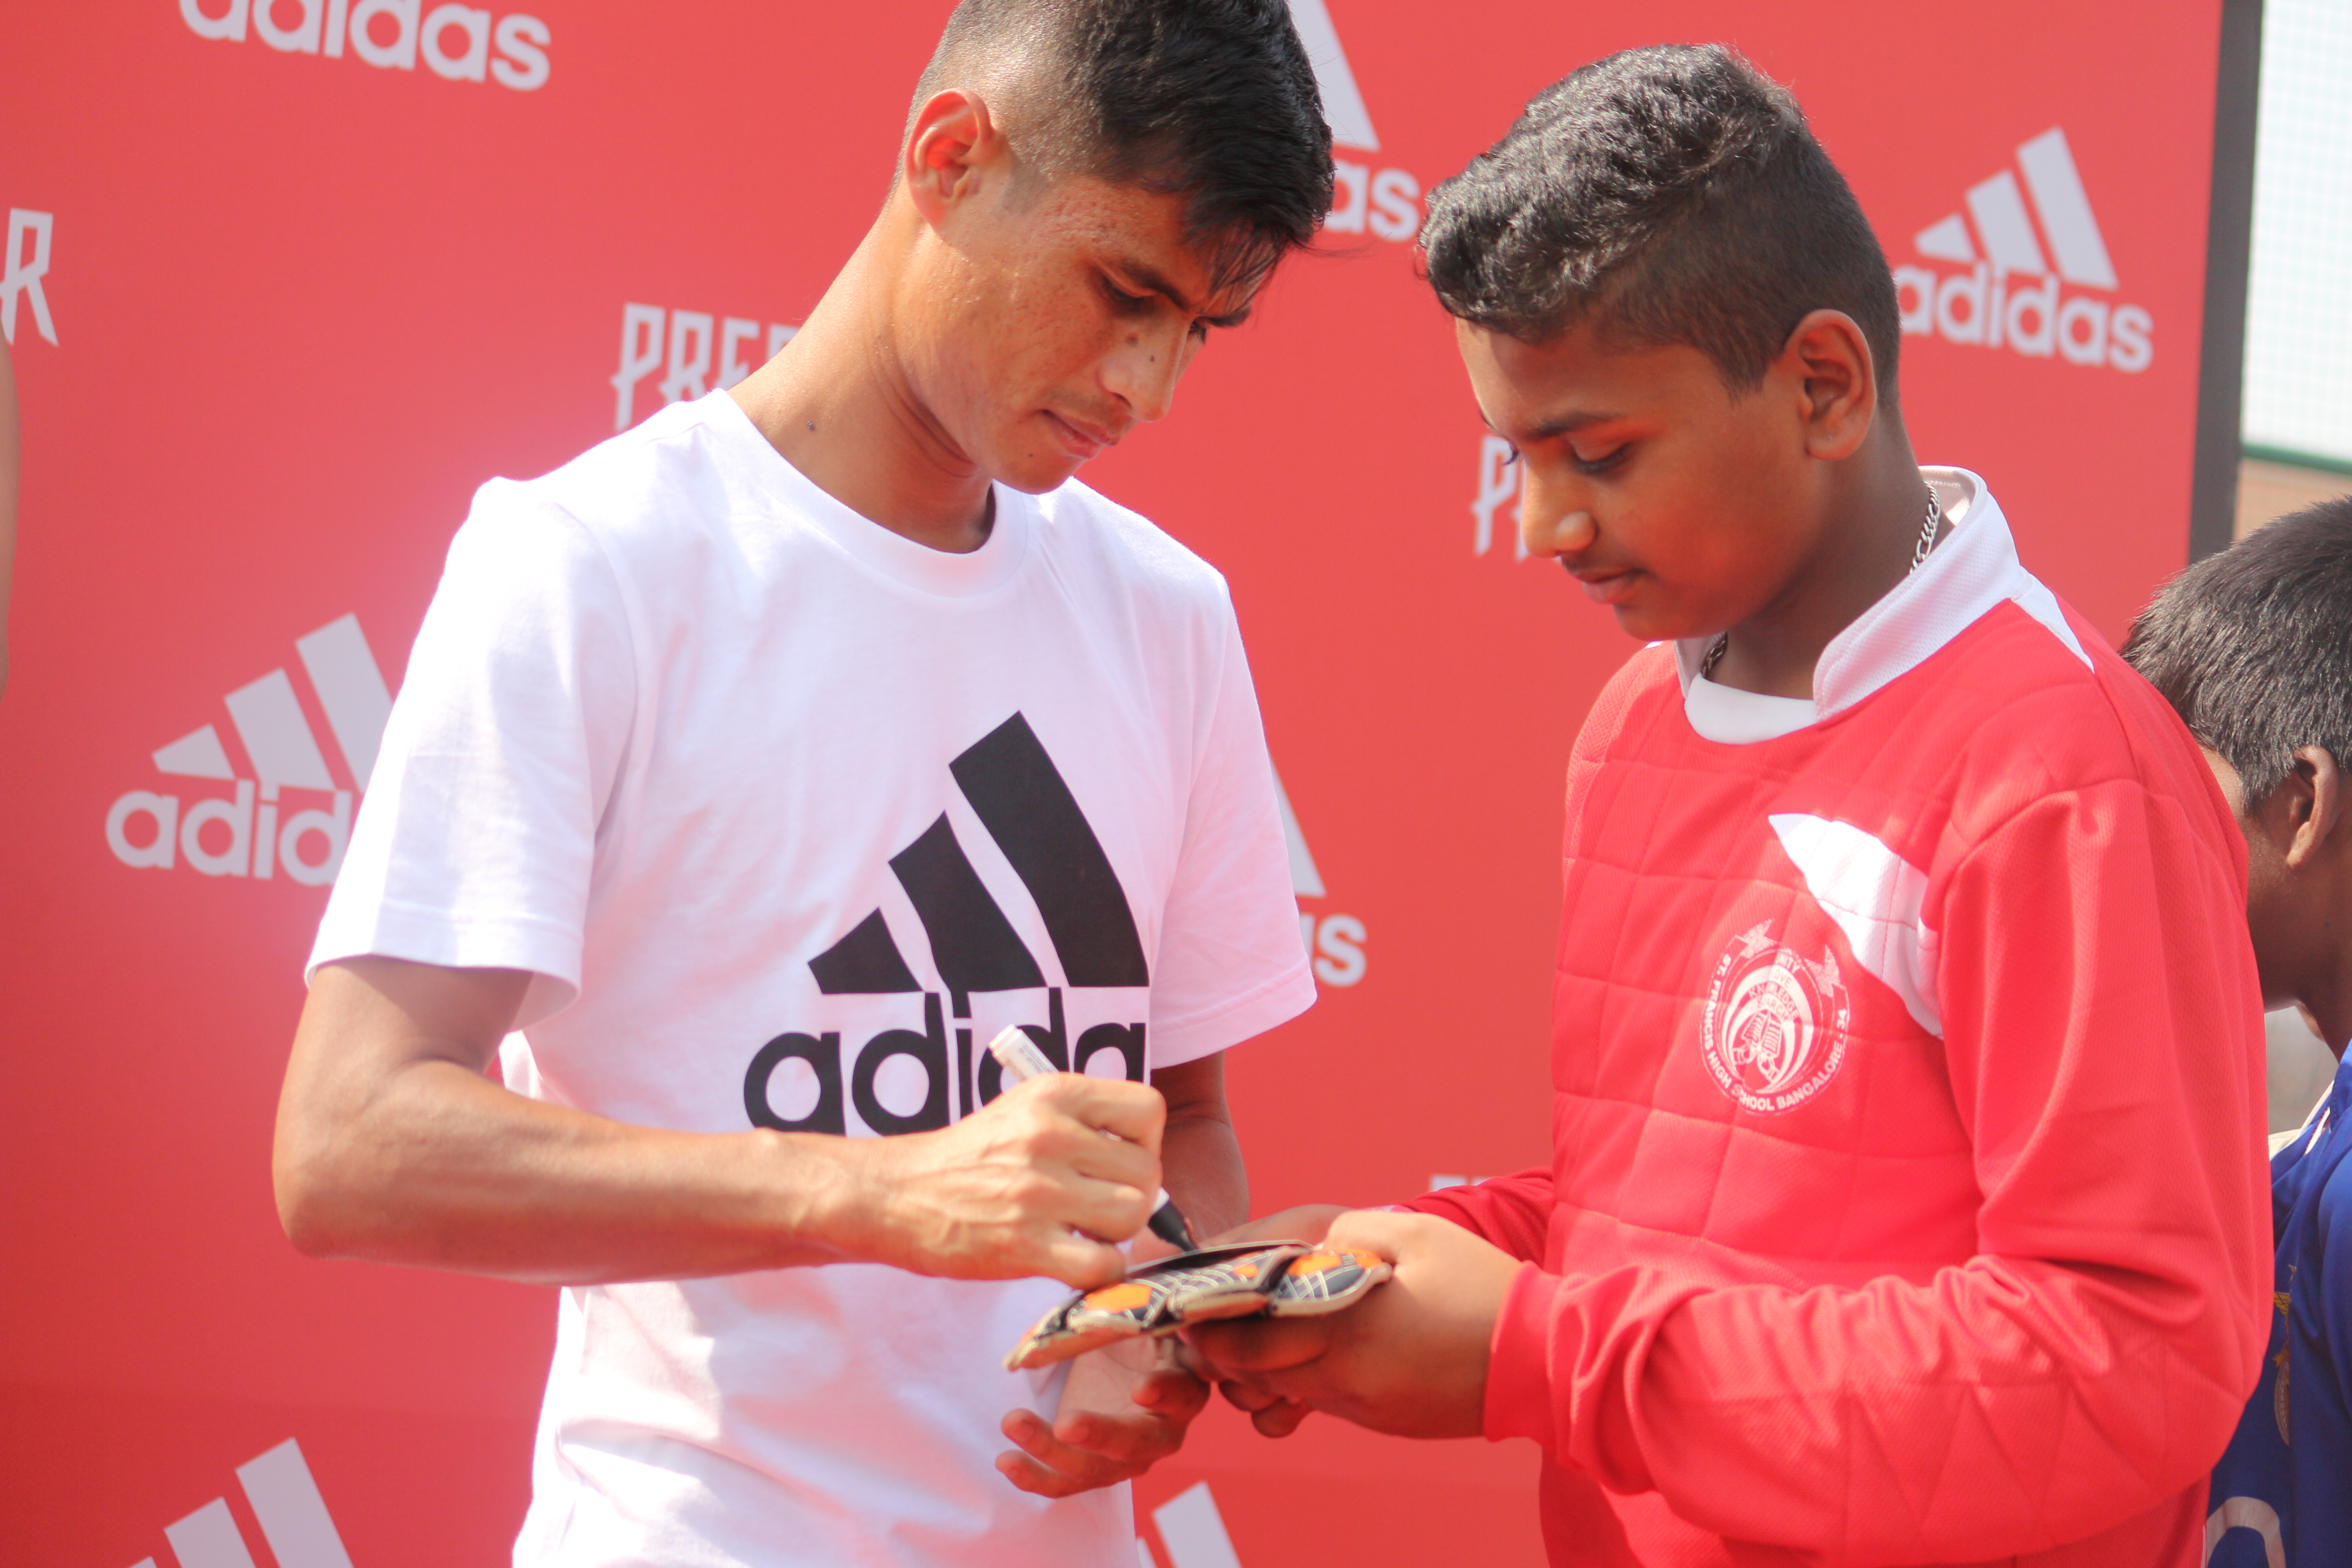 Adidas football kicks off second leg of 'Unfair Tournament'